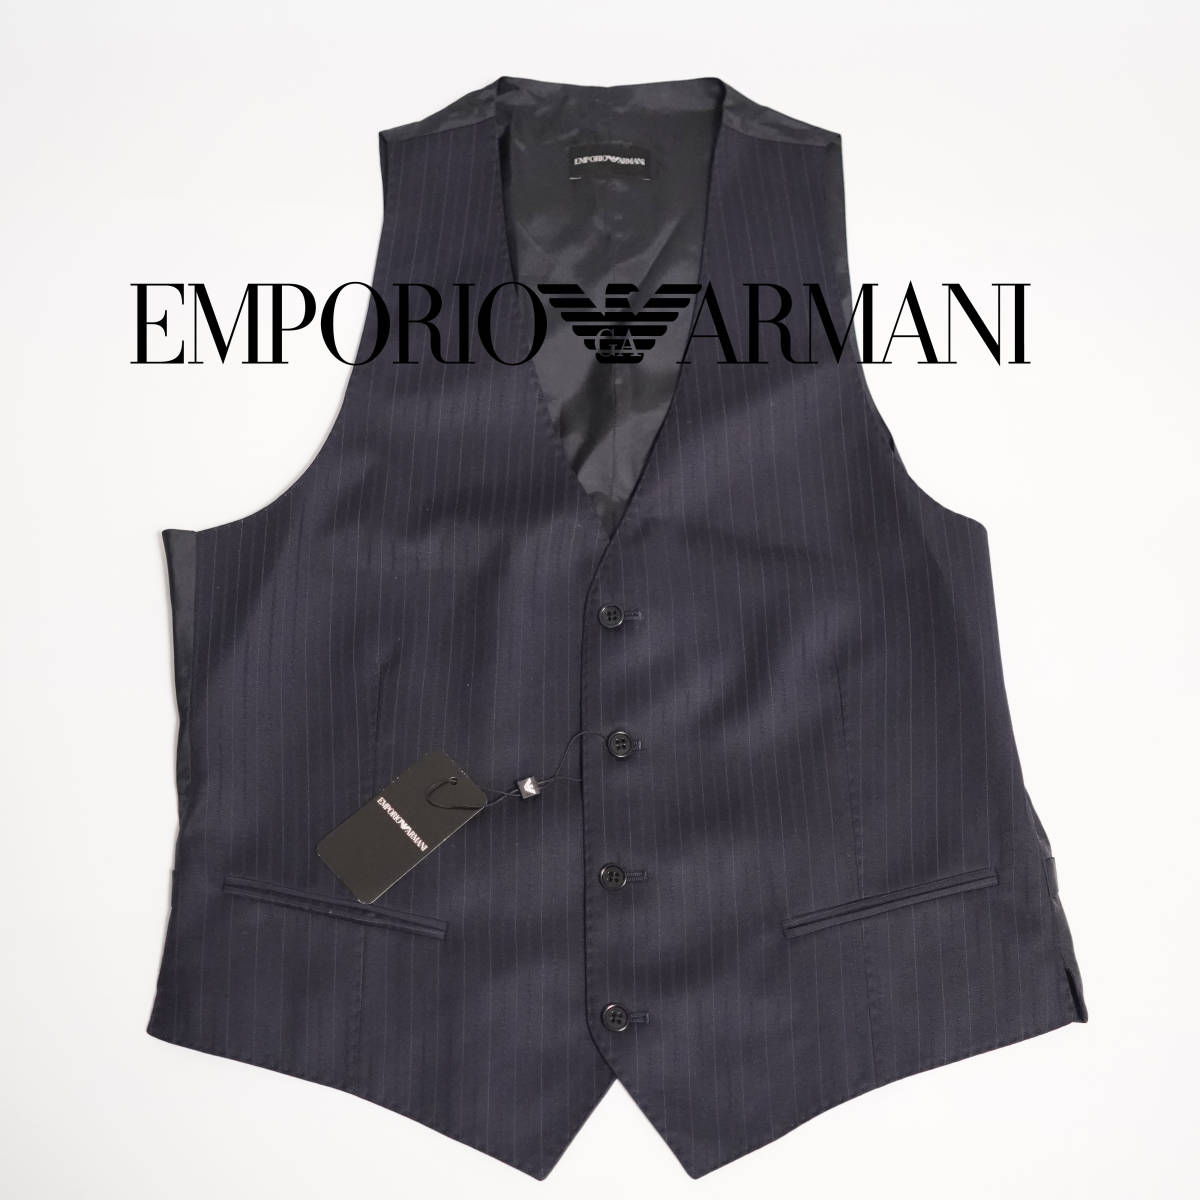 クールなストライプデザイン柄 EMPORIO ARMANI ベスト エンポリオアルマーニ 50サイズ Lサイズ ジレ ネイビーブルー スーツ ベスト